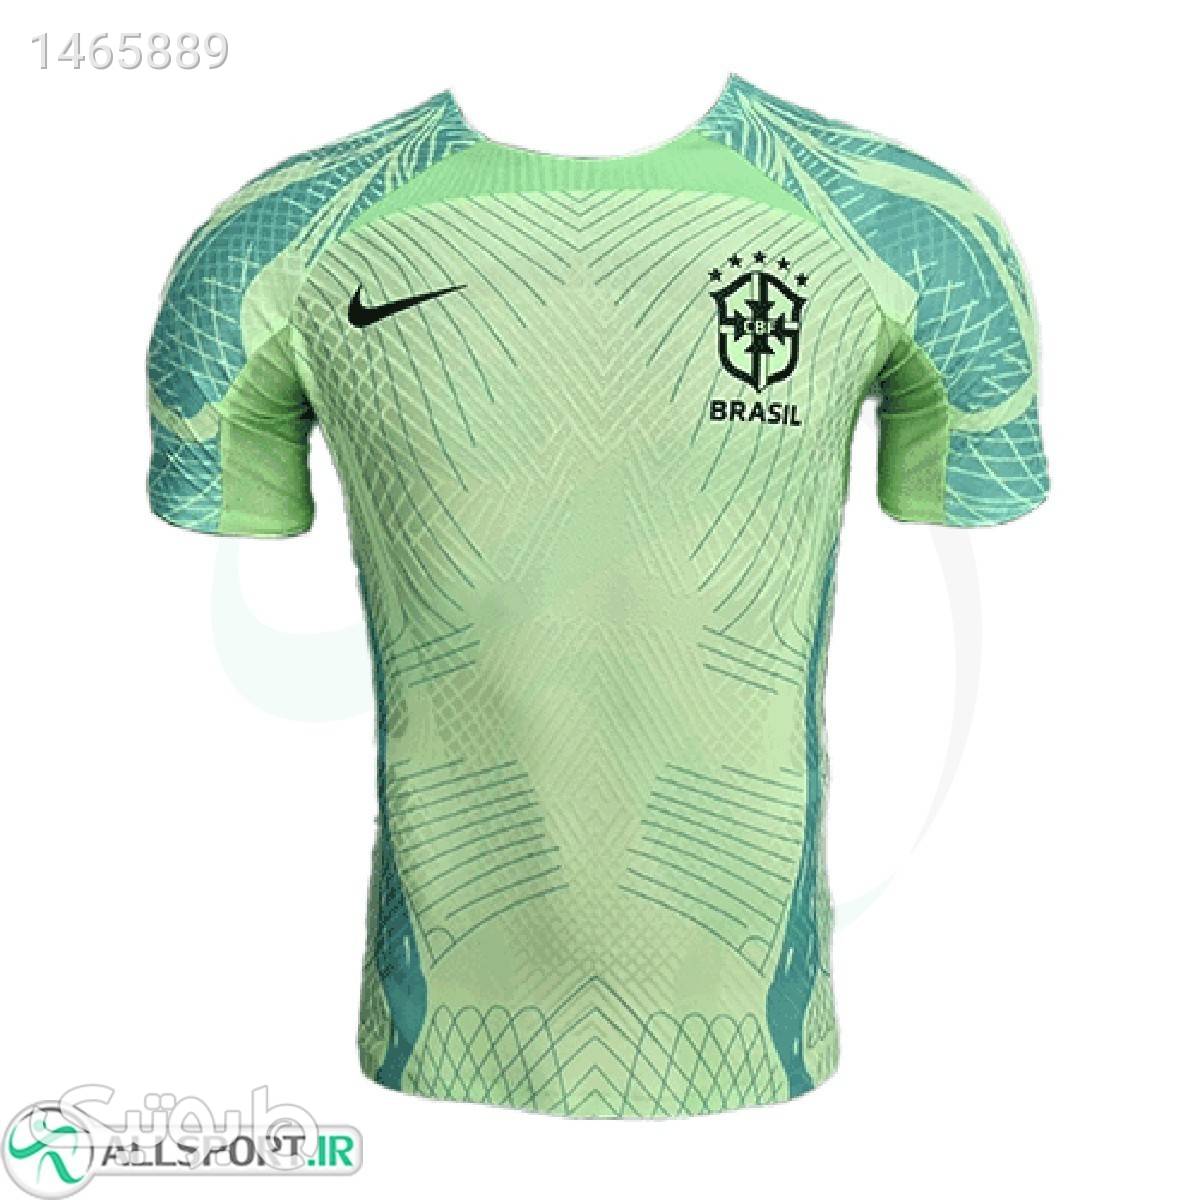 پیراهن پلیری تمرینی برزیل Brazil 202021 Training Soccer Jersey سبز ست ورزشی مردانه